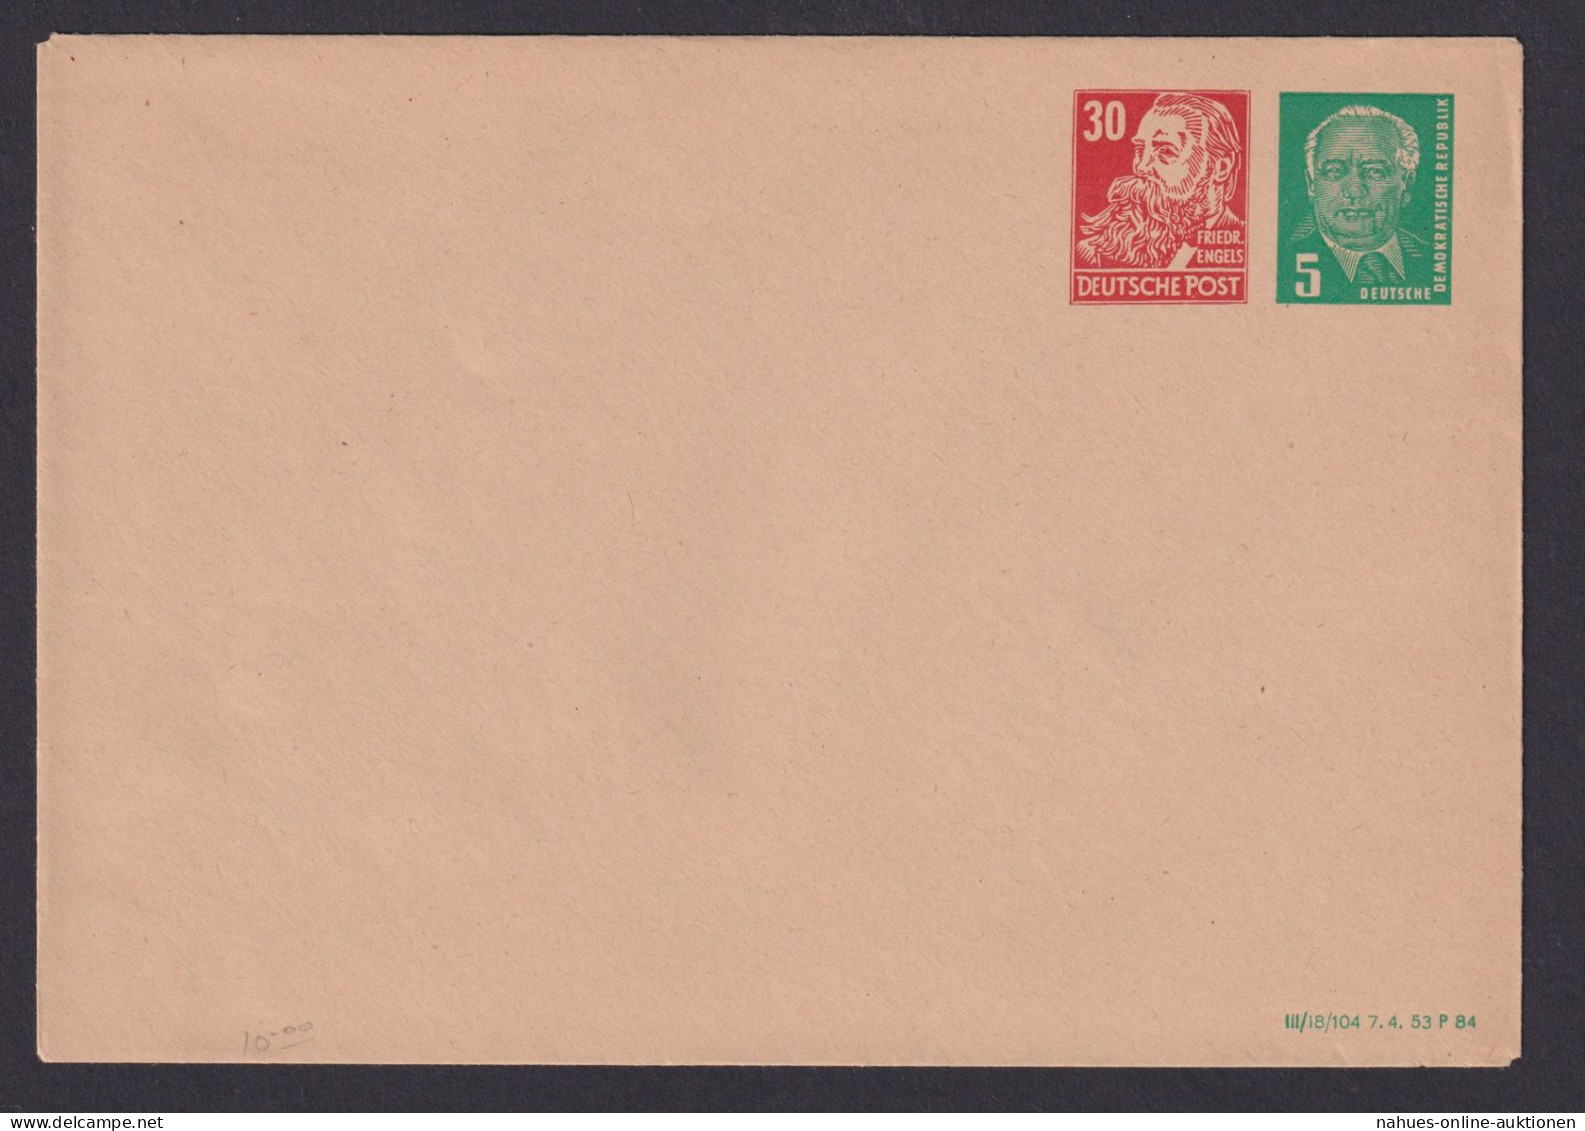 Briefmarken DDR Privatganzsache PU 9 30 Neben 5 Pfg. Mit Druckdatum 1984 Pieck - Postkarten - Gebraucht